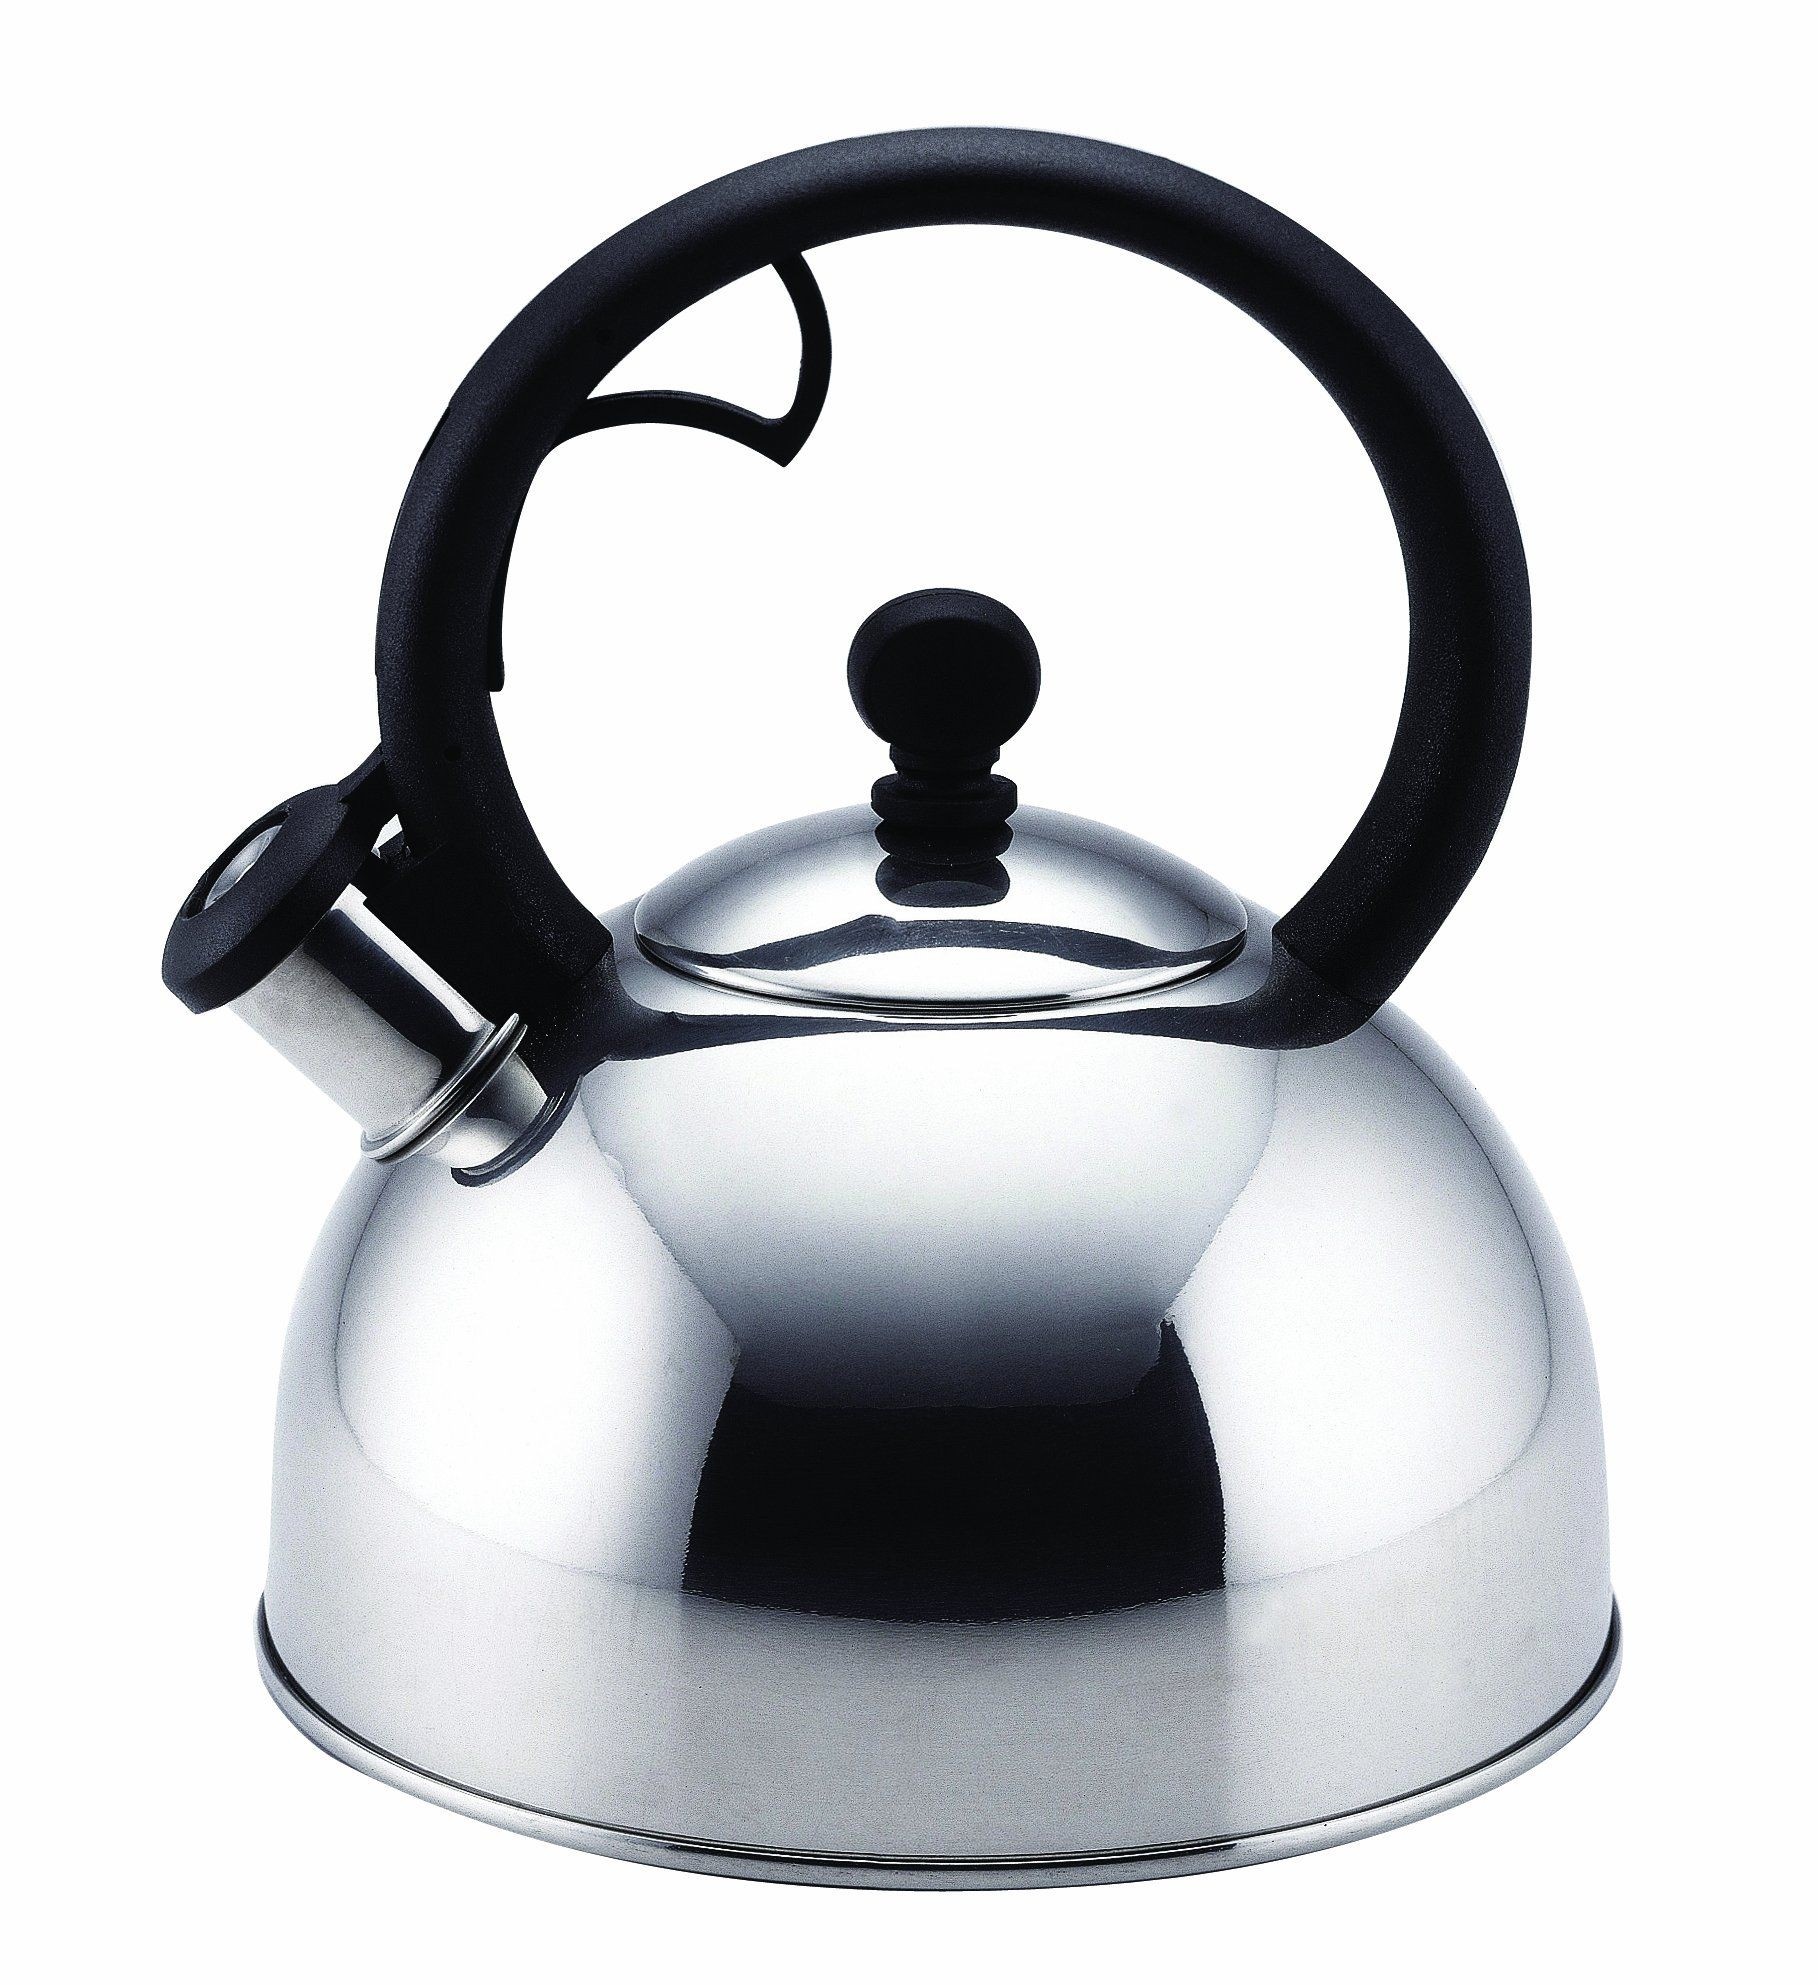 https://foter.com/photos/332/best-tea-kettles-made-in-usa.jpg